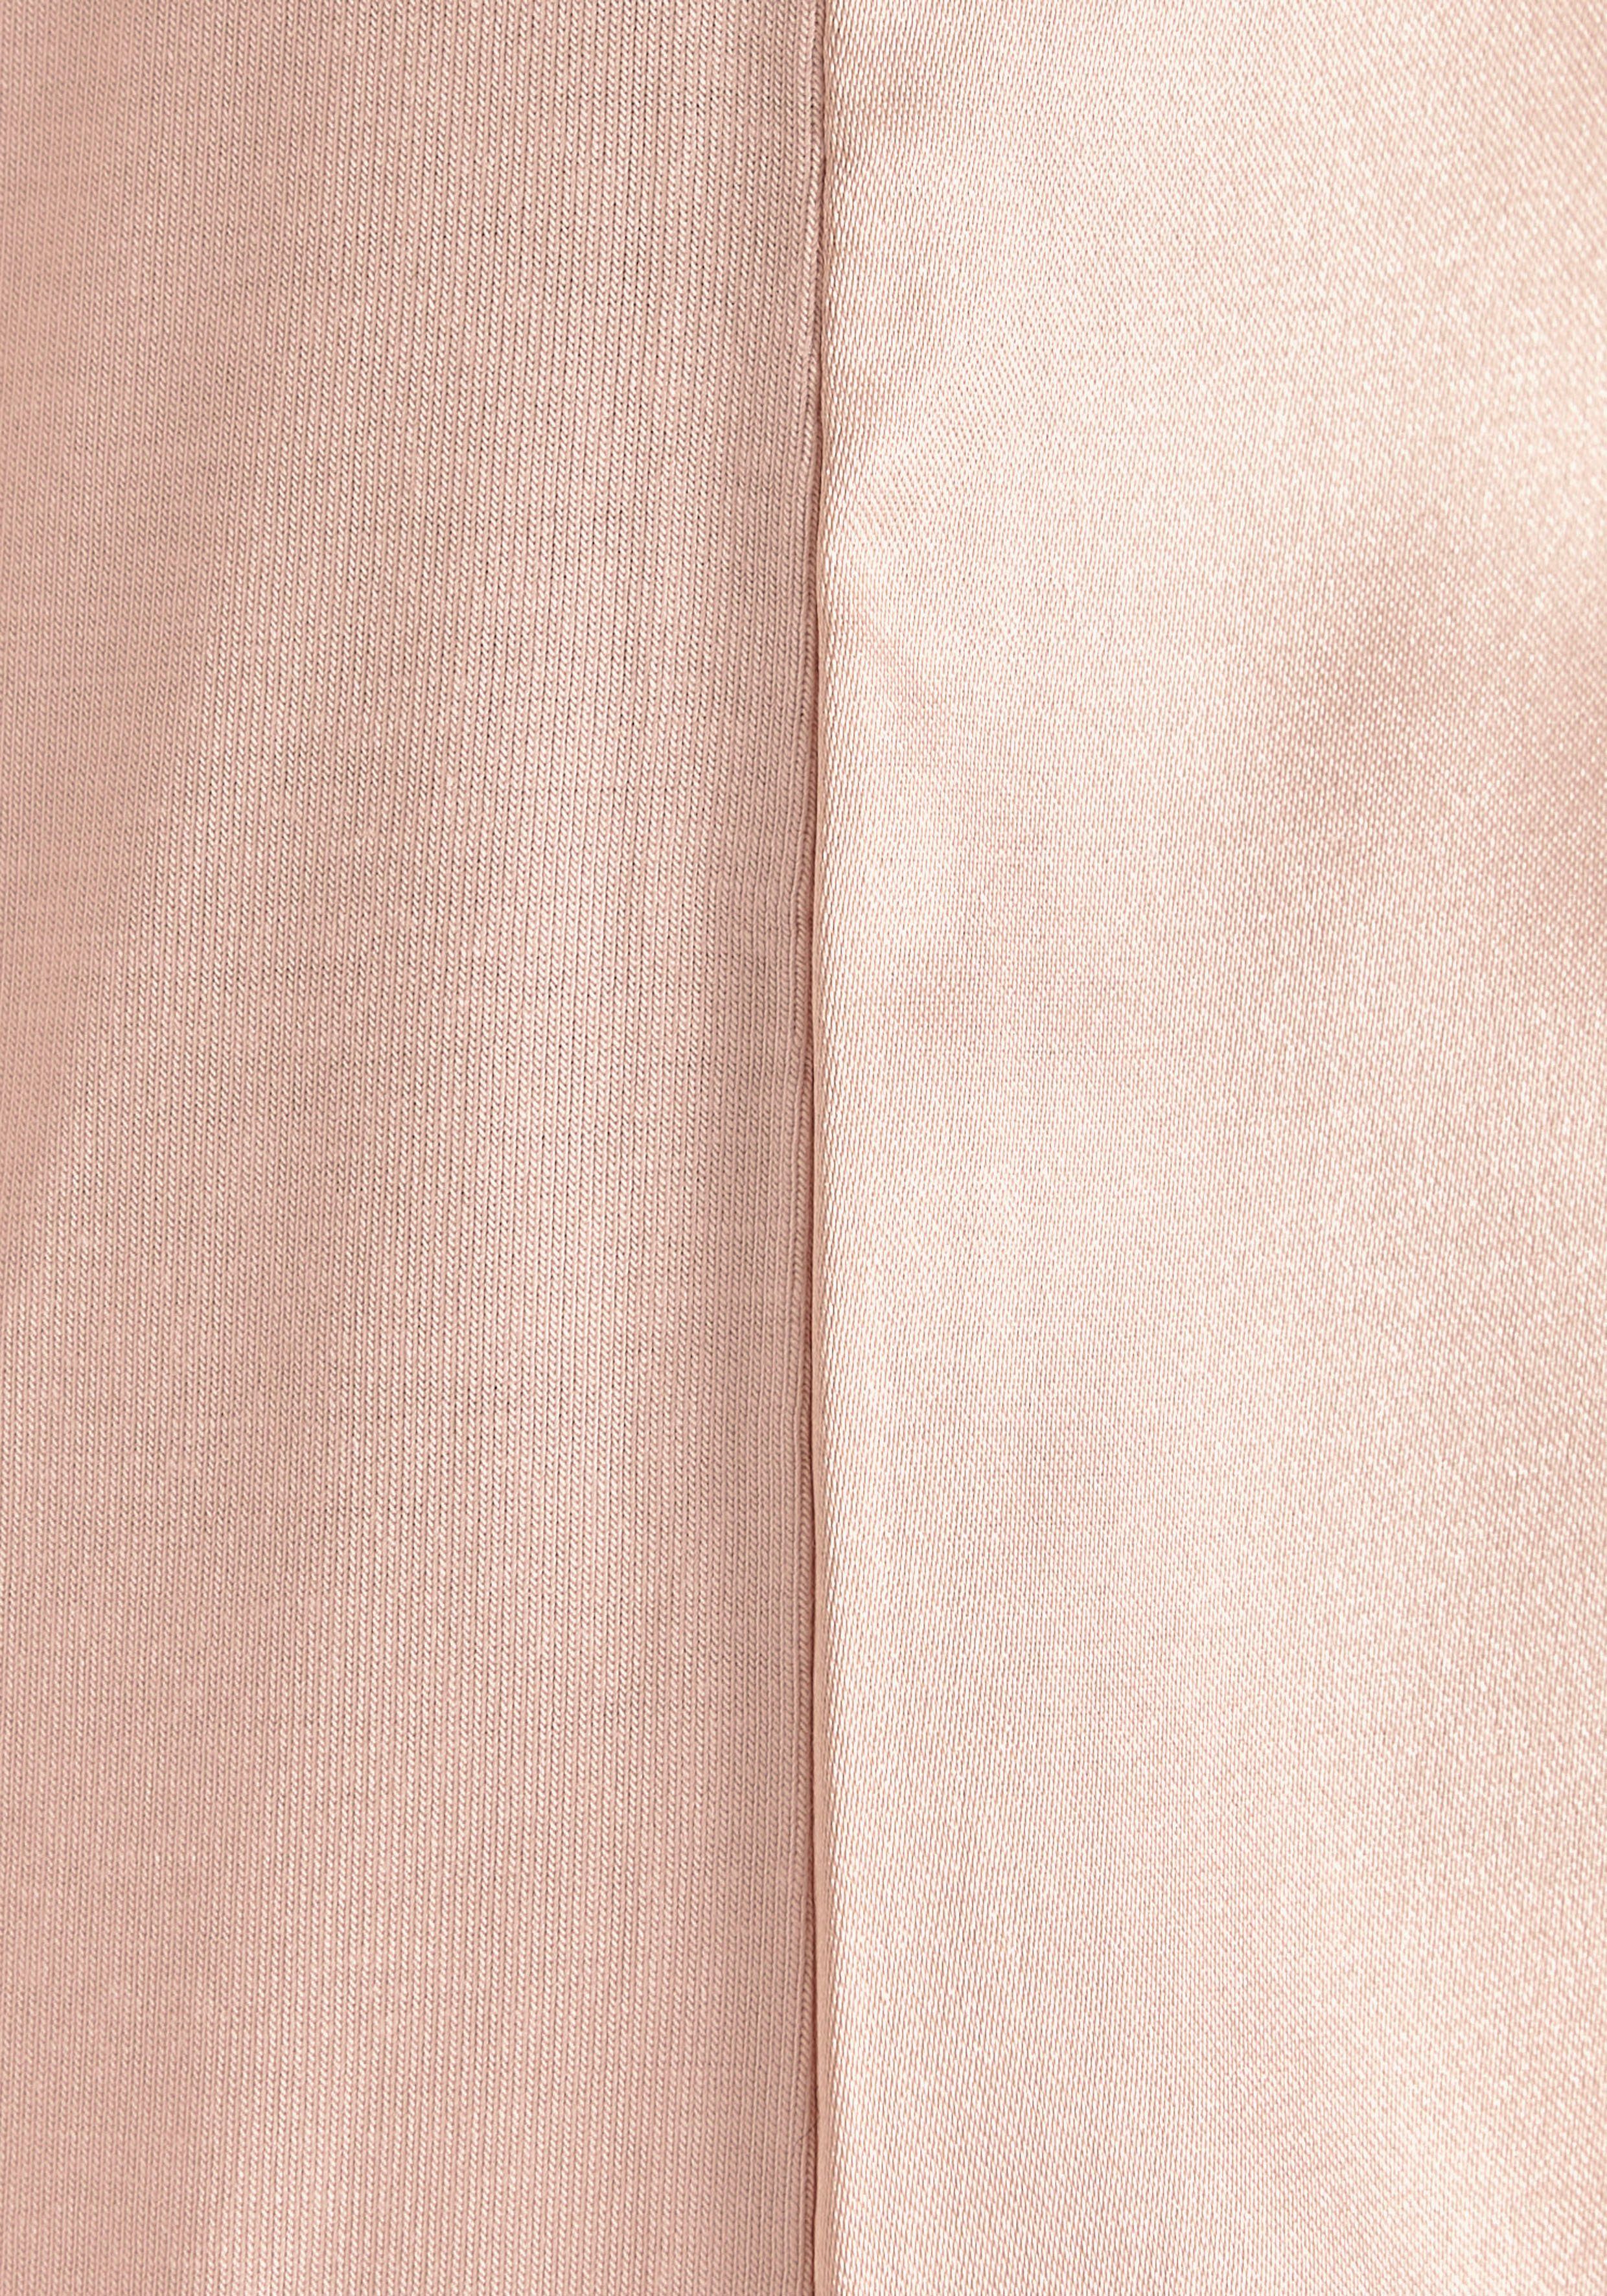 HECHTER PARIS Blusenshirt mit kurzen Ärmeln rosa